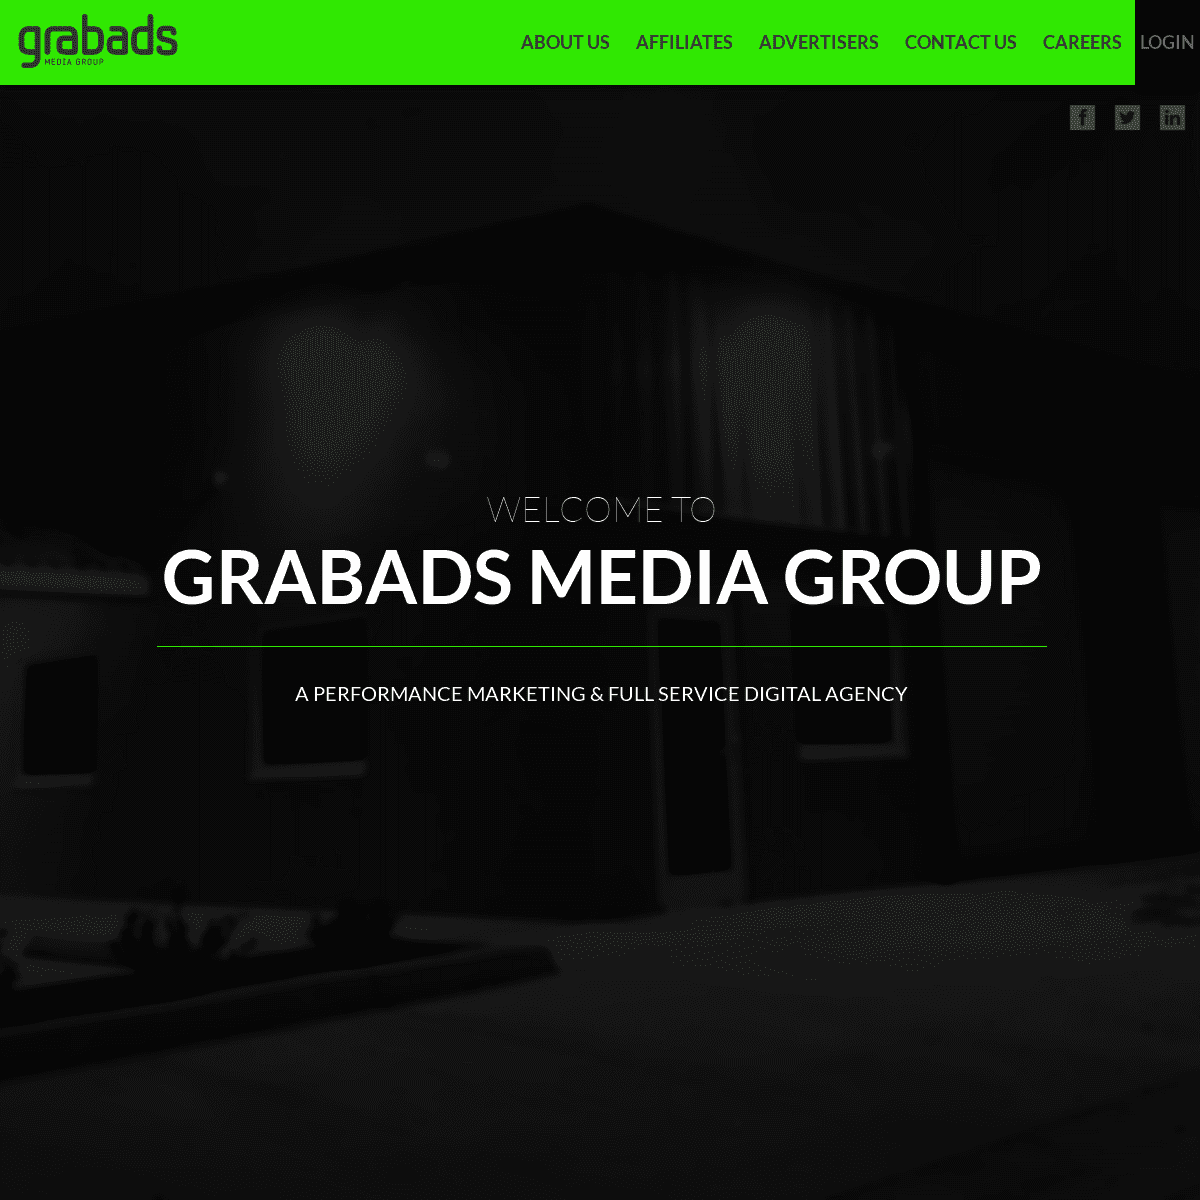 Grabads Media Group